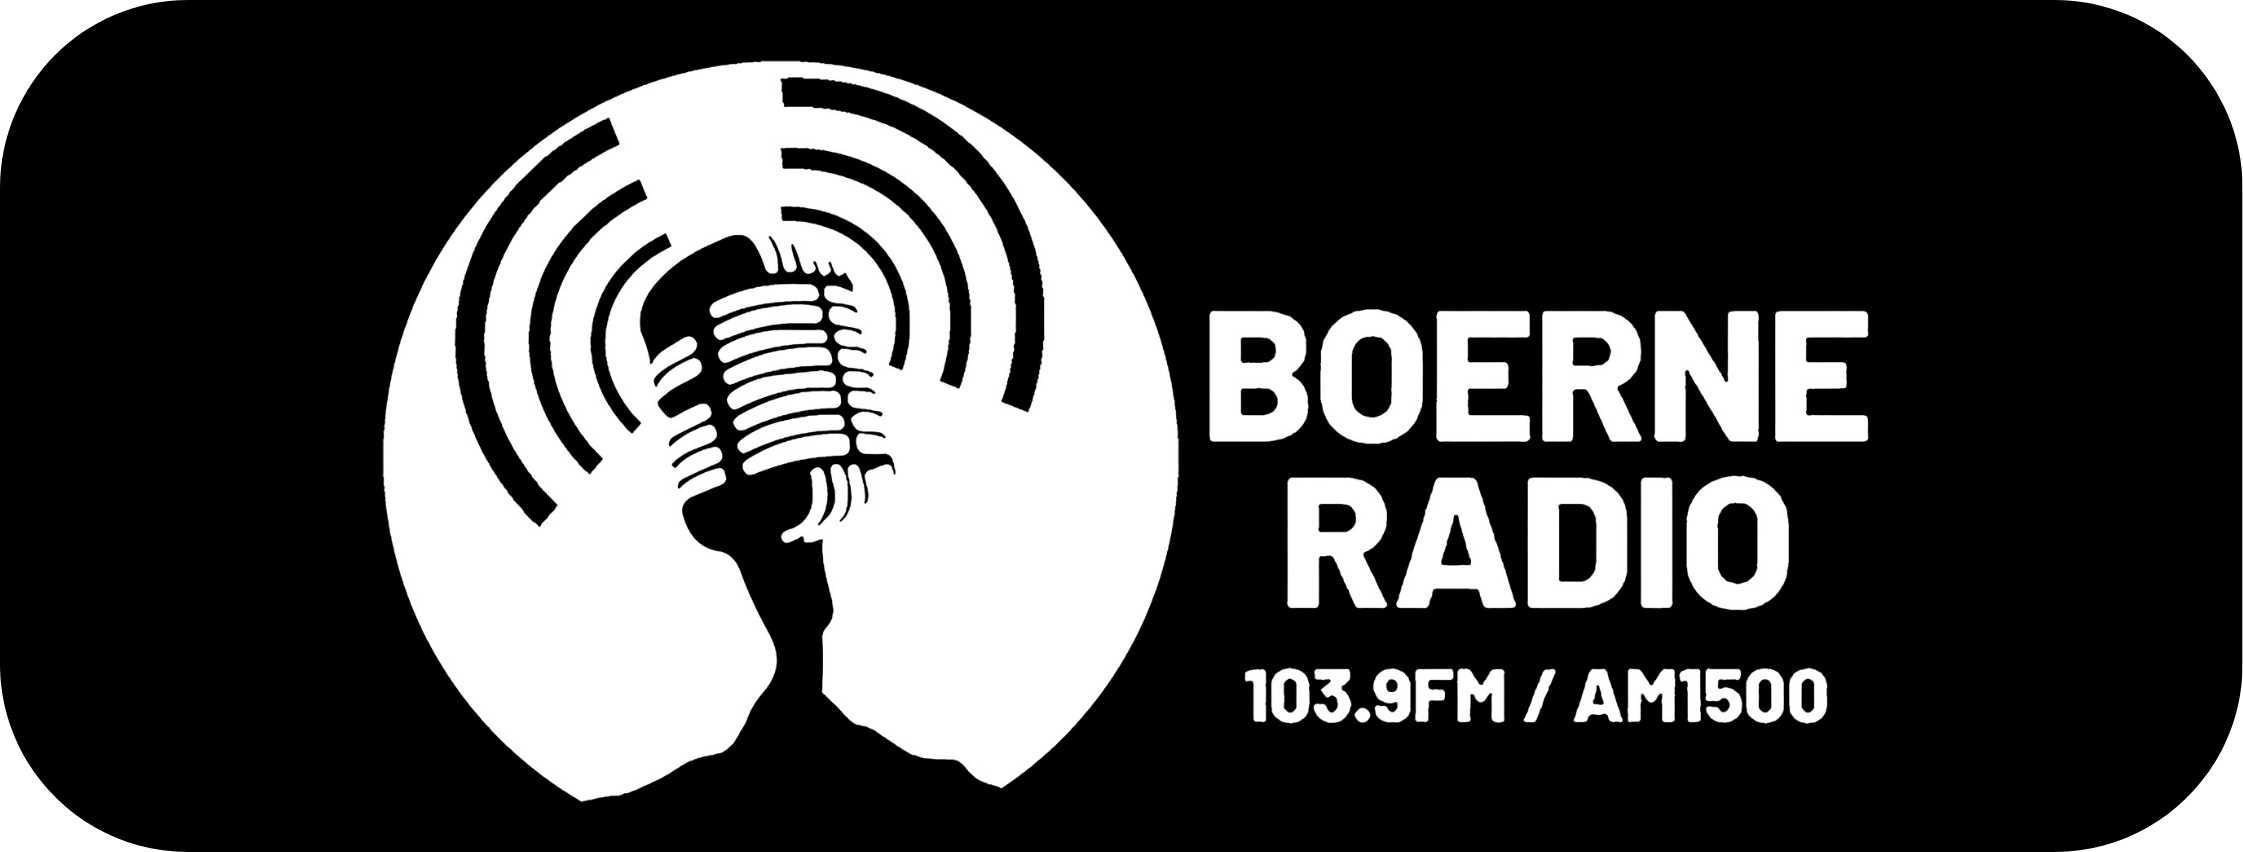 Boerne Radio Building Texas Ep 41 - Boerne Handmade Market (Copy)